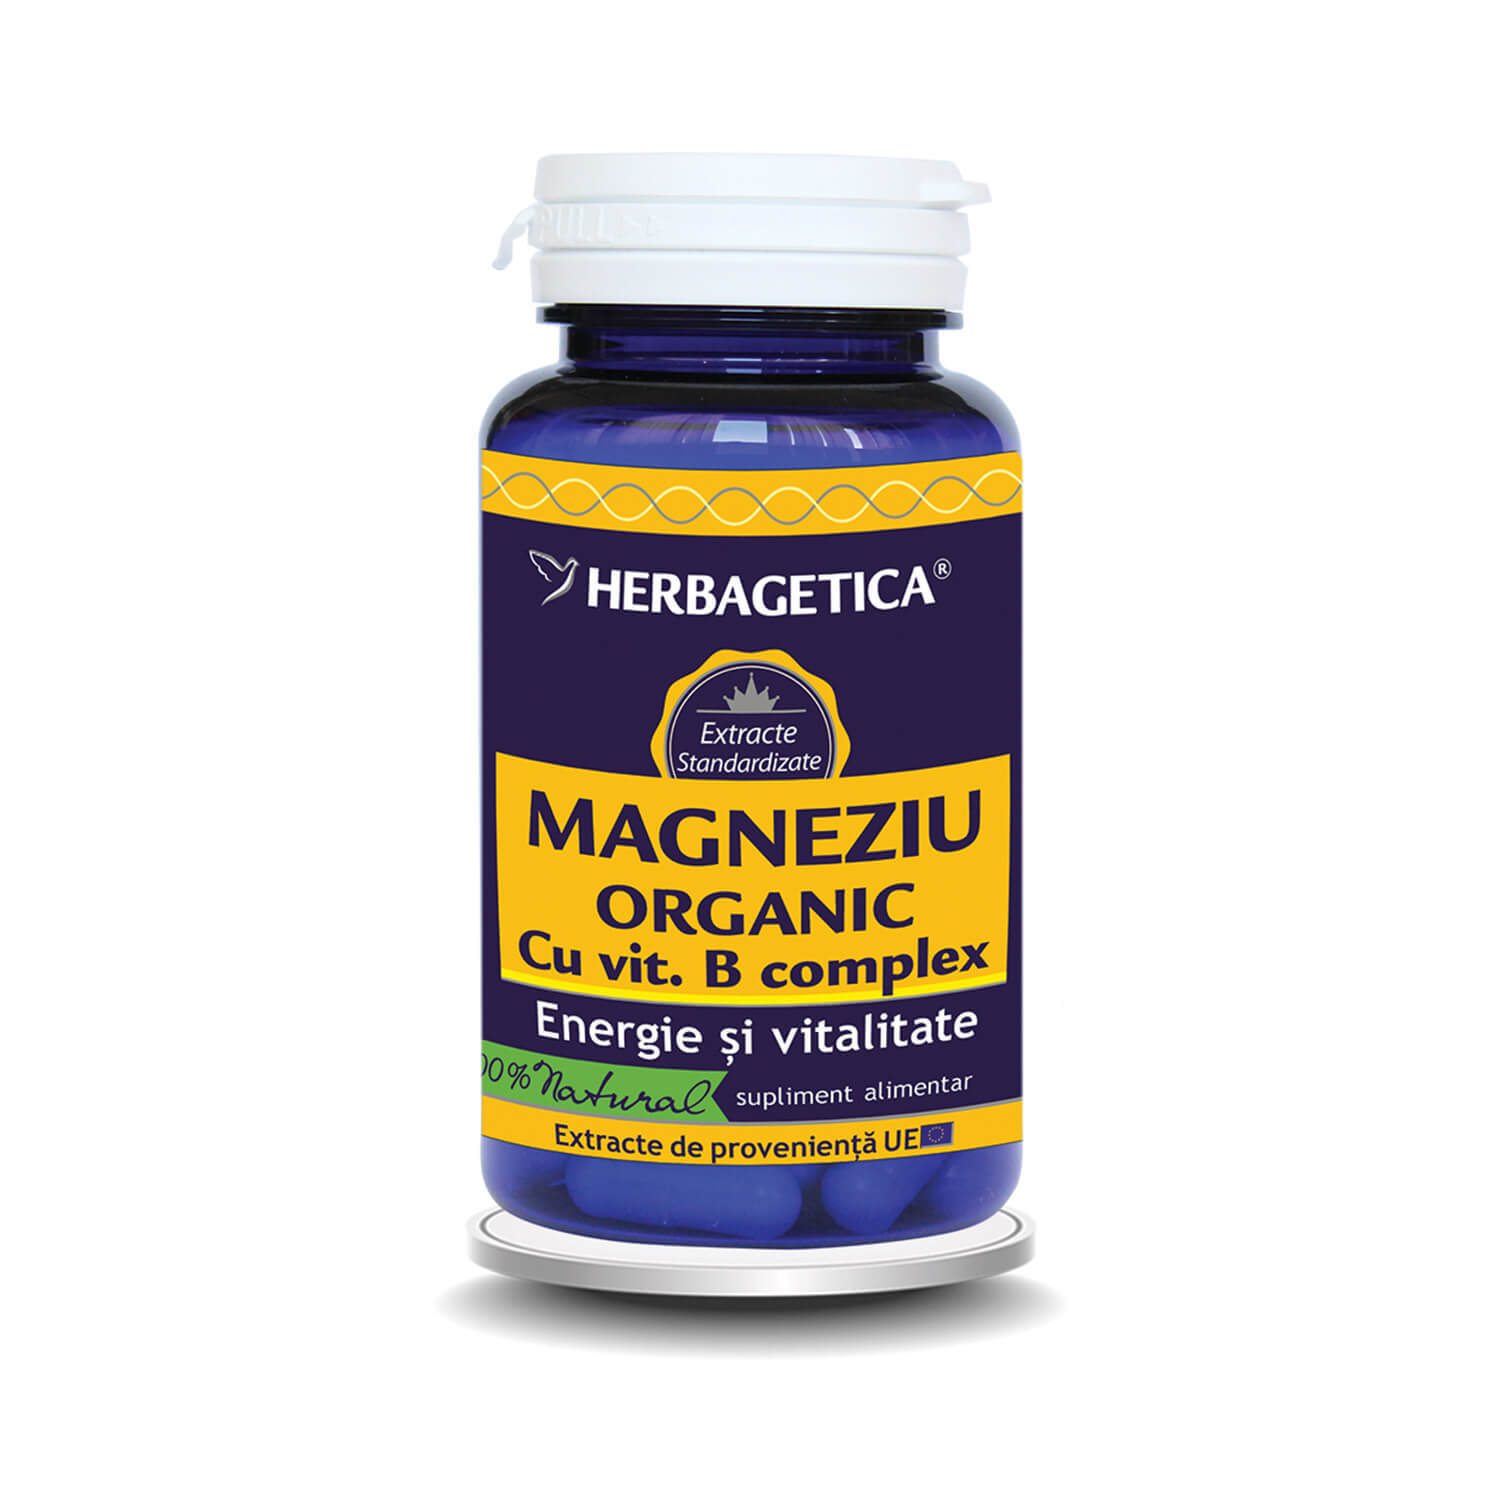 magneziu organic cu vitamina b complex 120 capsule herbagetica Magneziu Organic cu Vitamina B complex, 60 capsule, Herbagetica